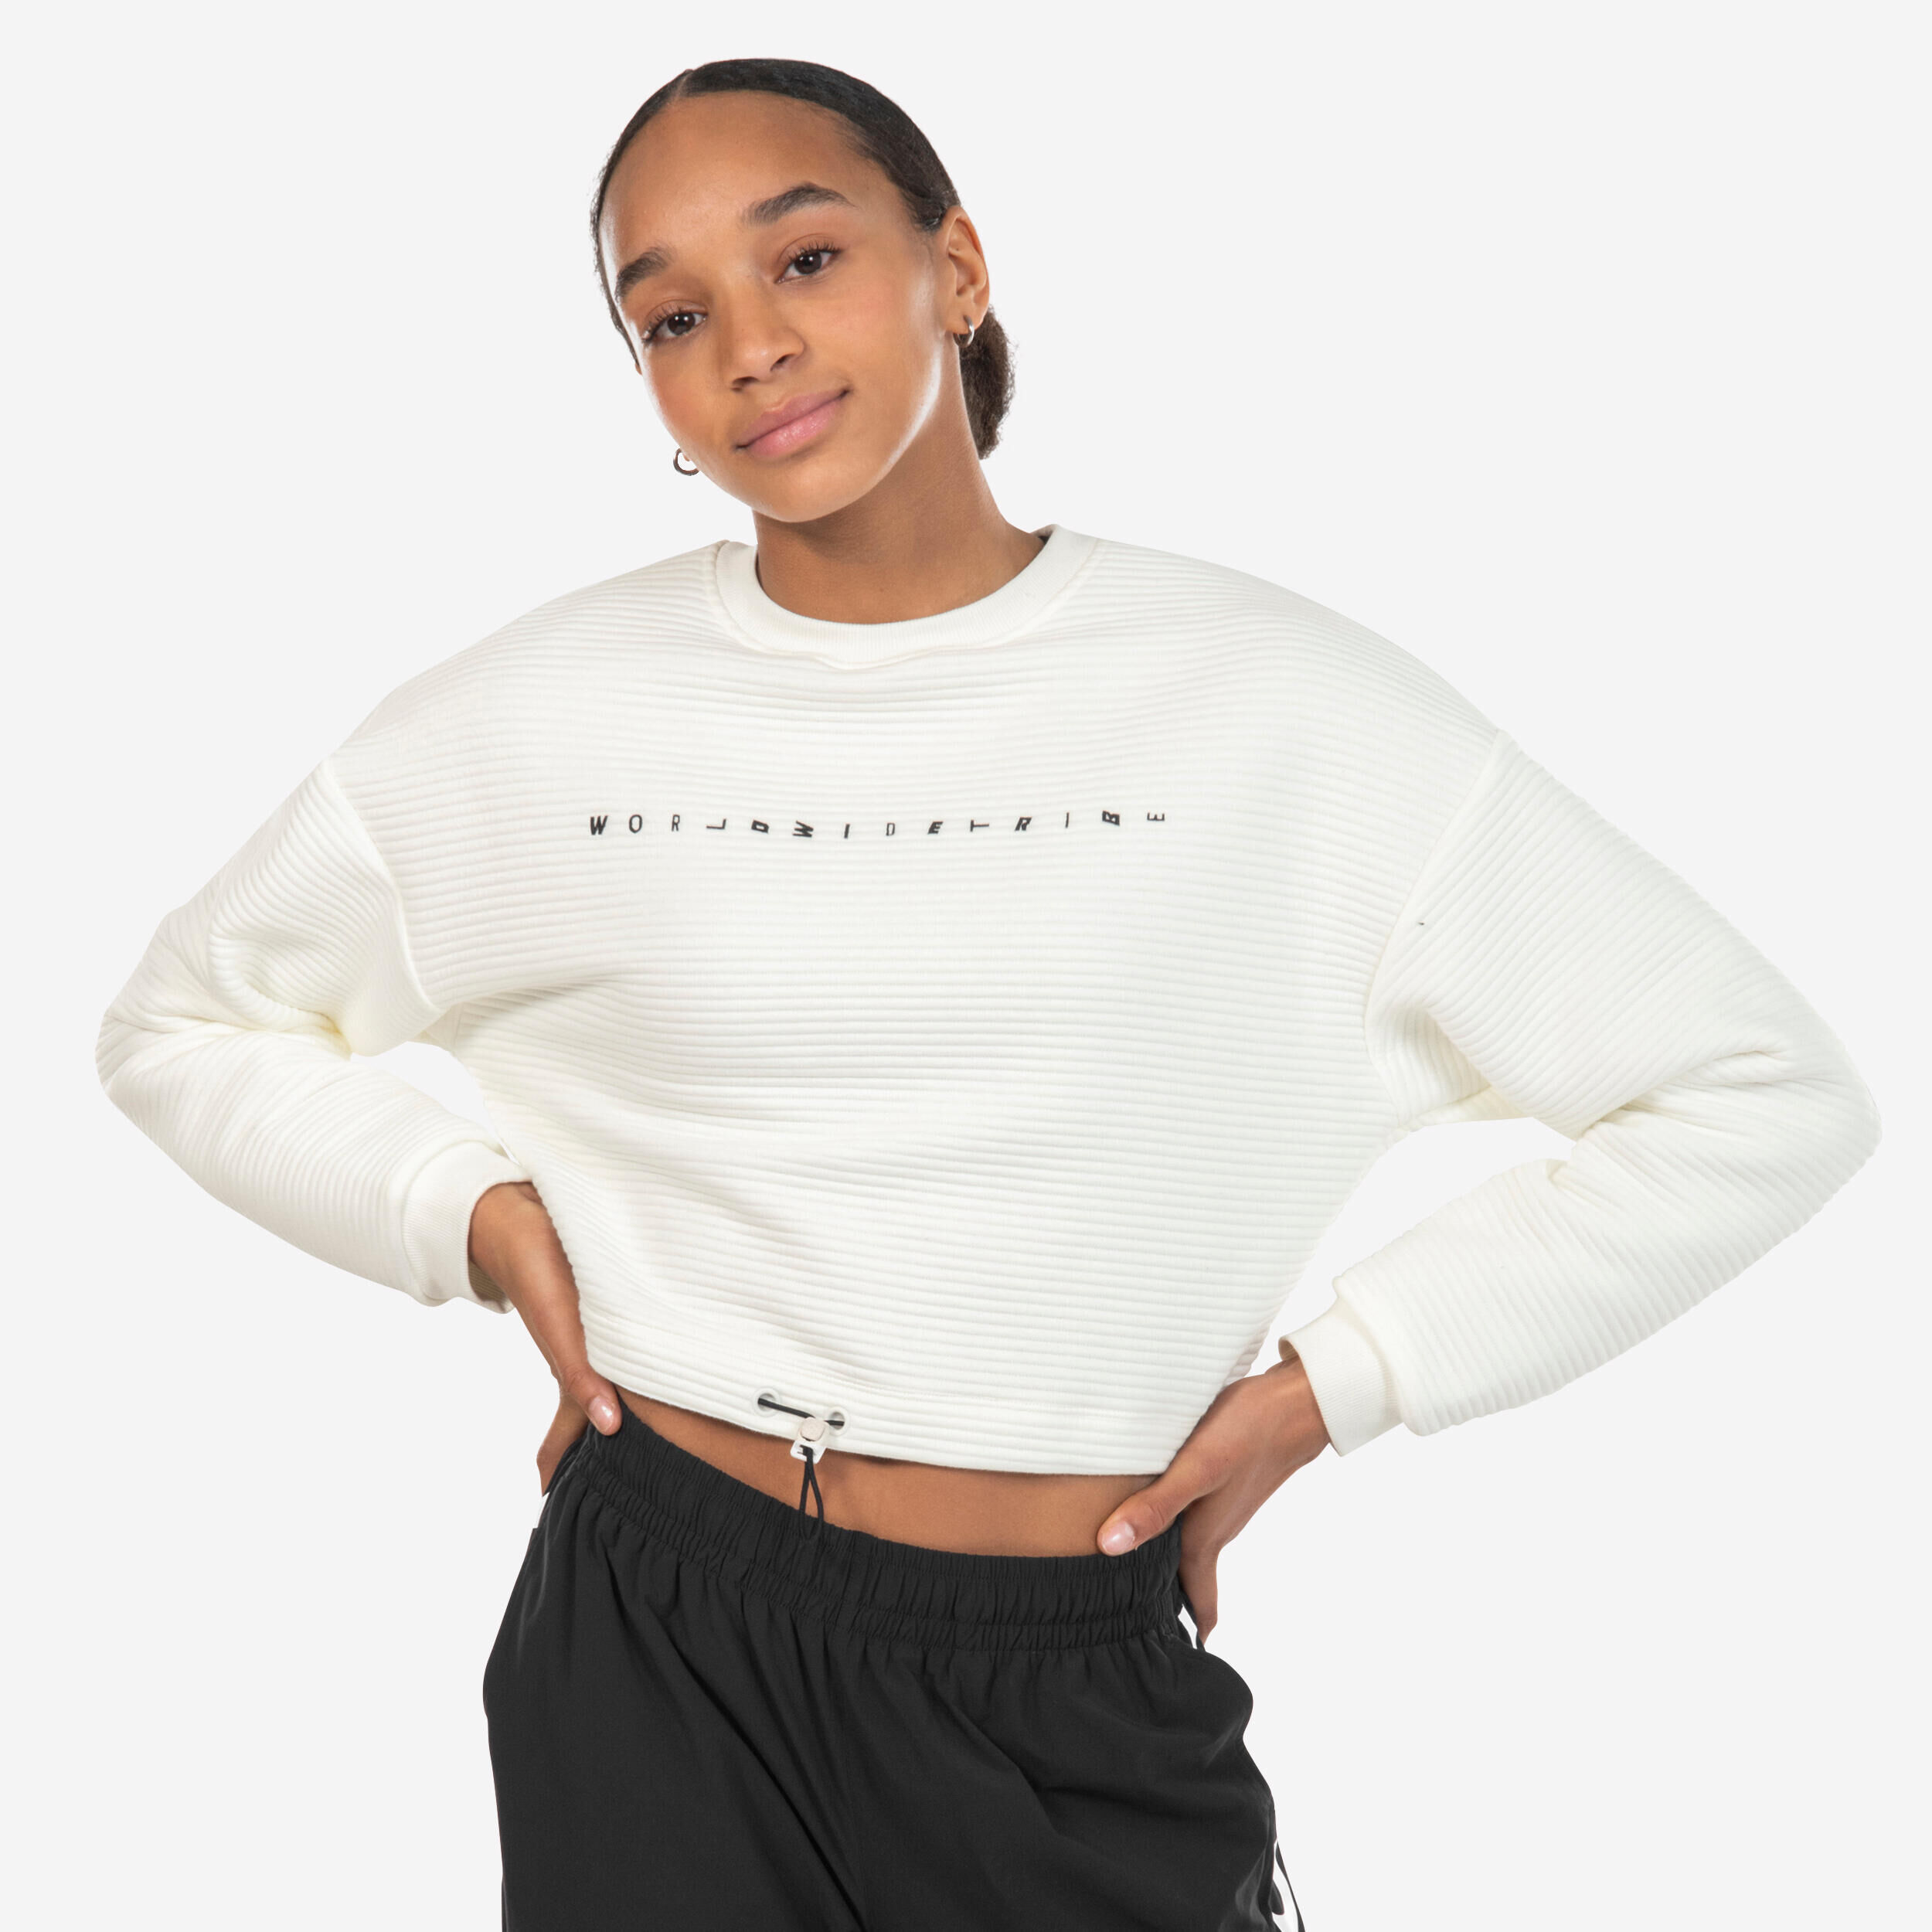 STAREVER Women's Urban Dance Cropped Sweatshirt - White